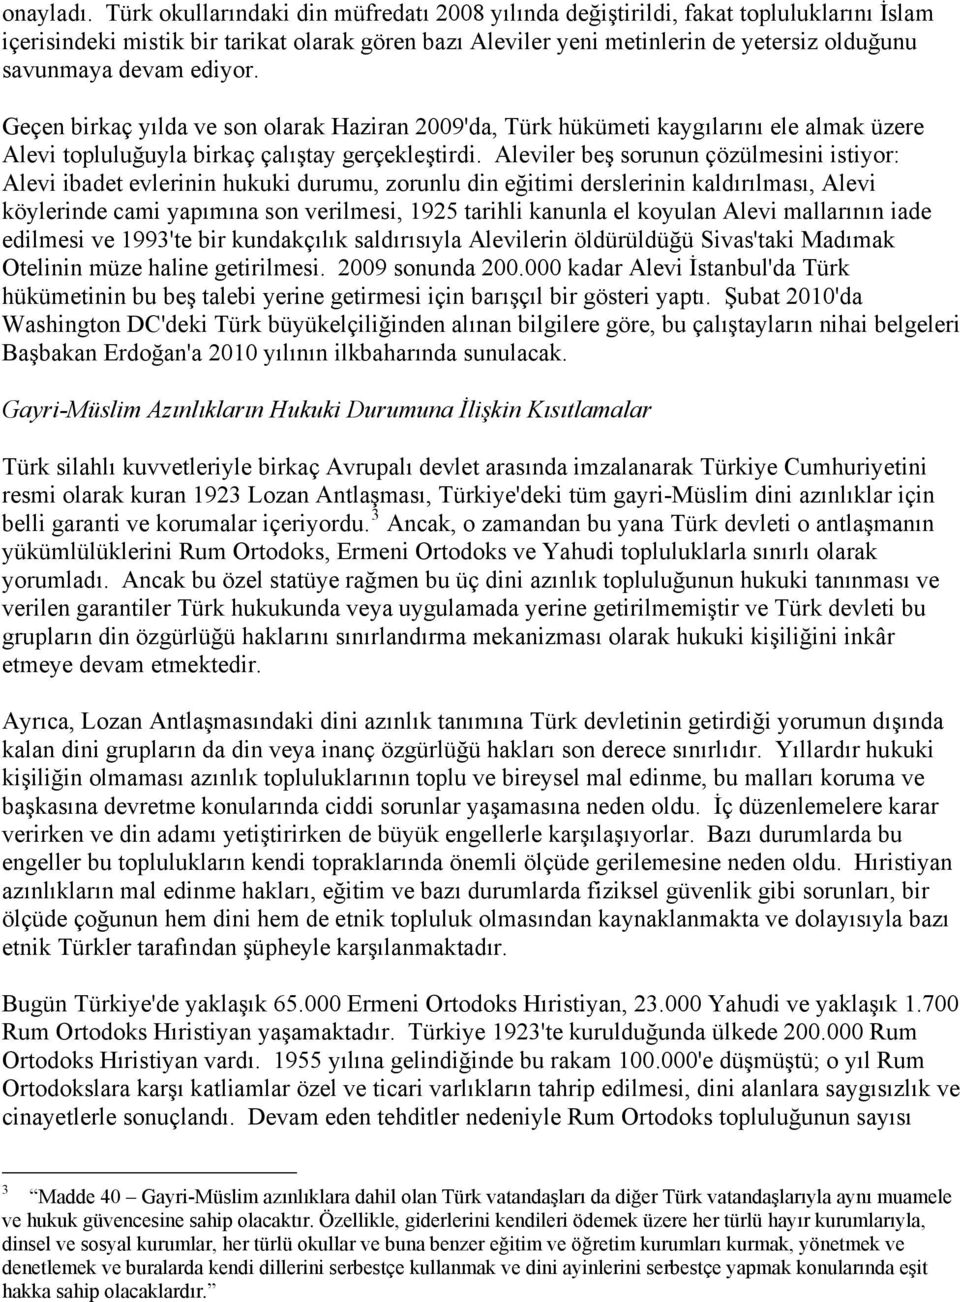 ediyor. Geçen birkaç yılda ve son olarak Haziran 2009'da, Türk hükümeti kaygılarını ele almak üzere Alevi topluluğuyla birkaç çalıştay gerçekleştirdi.